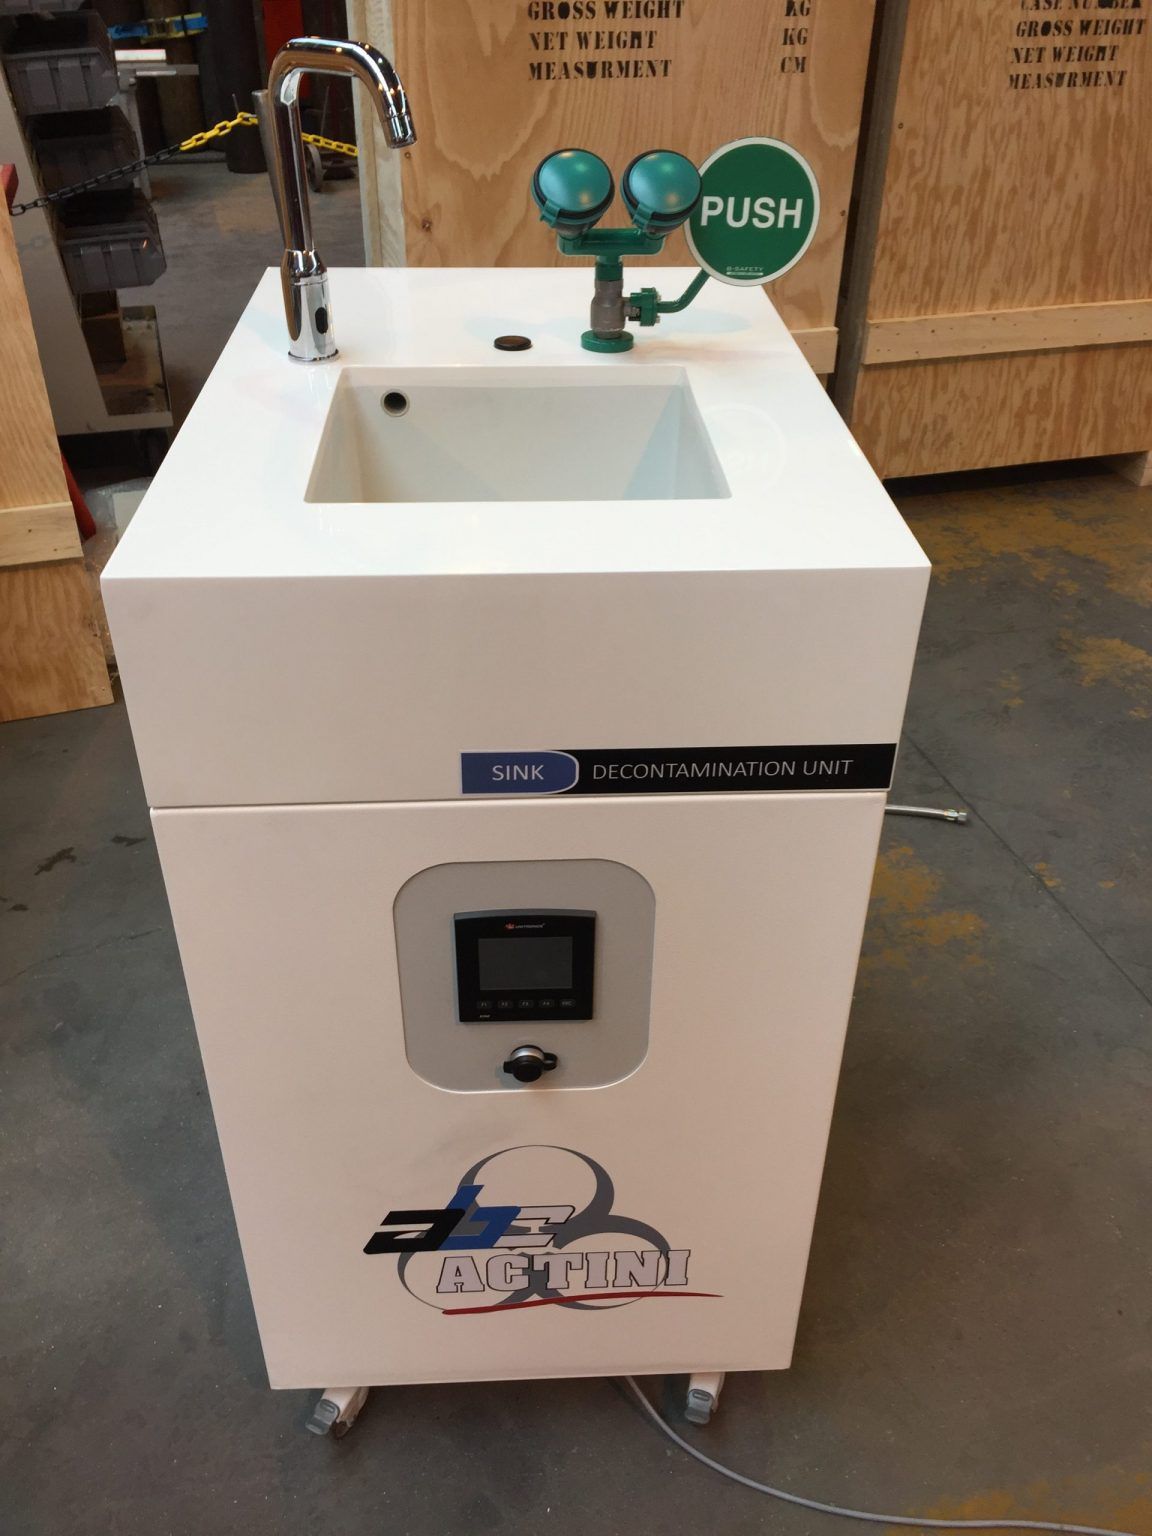 Sink biowaste decontamination system